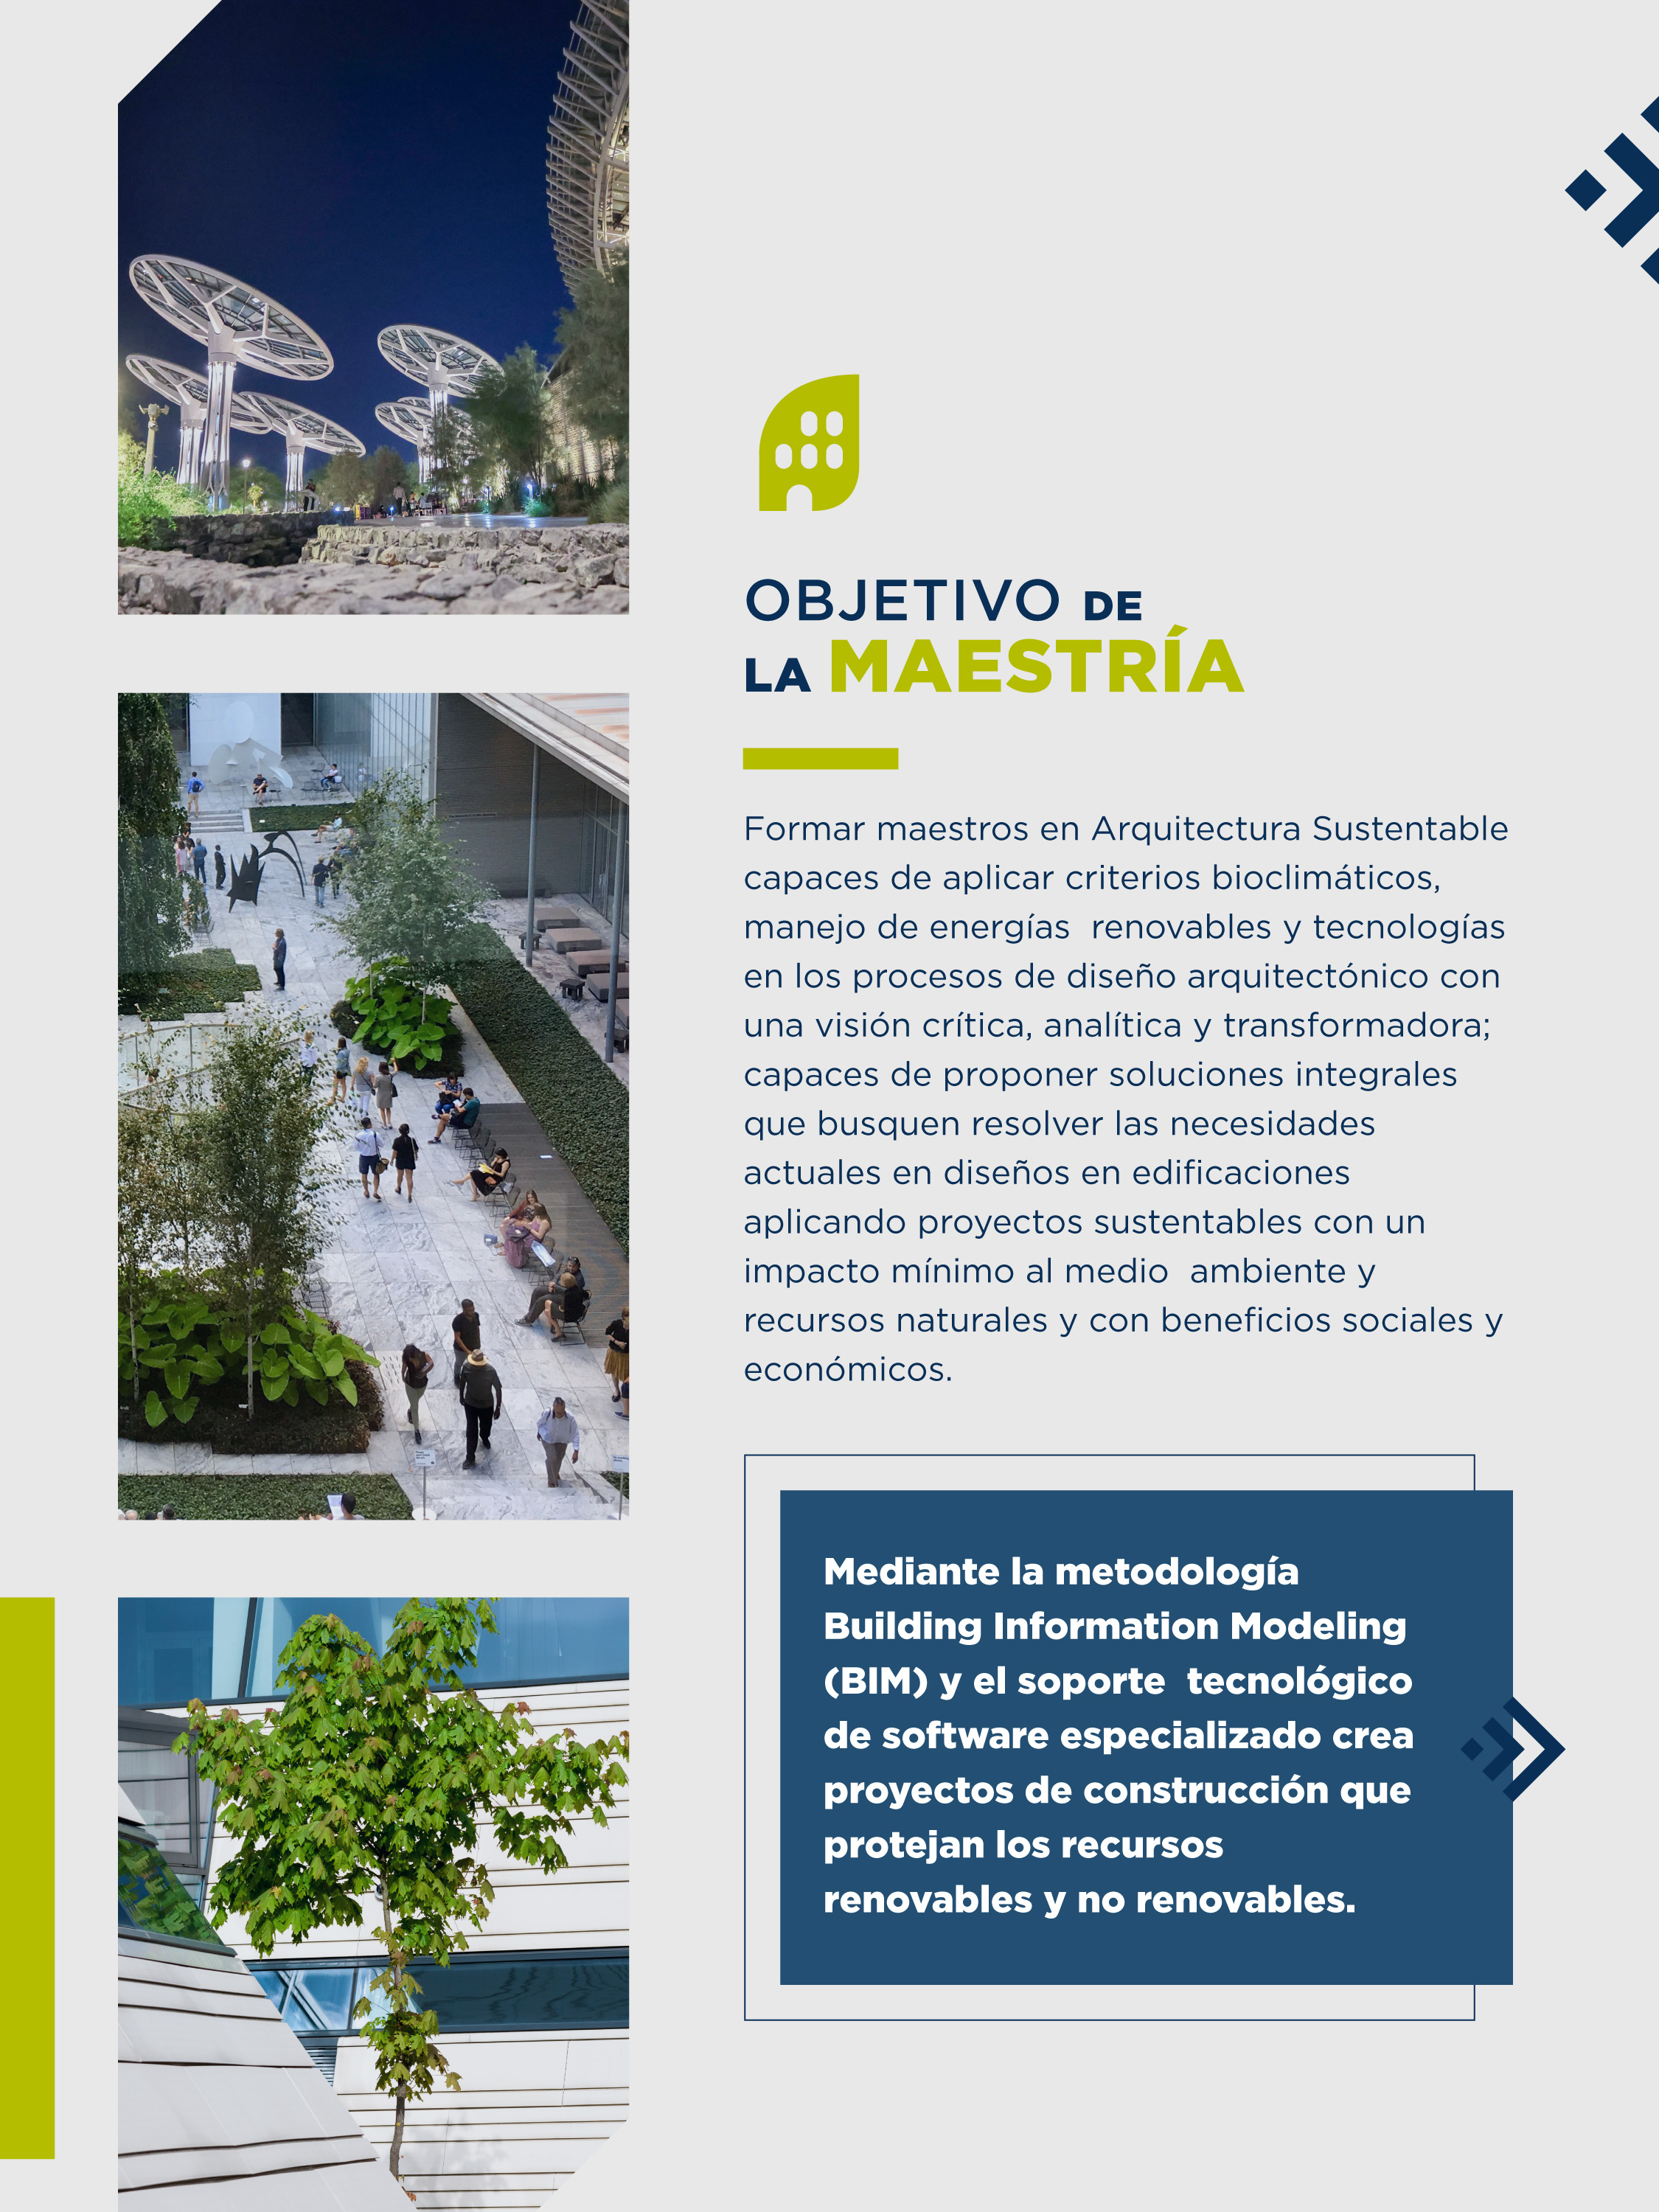 ¿Te gustaría conocer las habilidades y actitudes que adquirirás a lo largo del programa de la Maestria en Aquitectura Sutentable de la Universidad Cuauhtémoc?